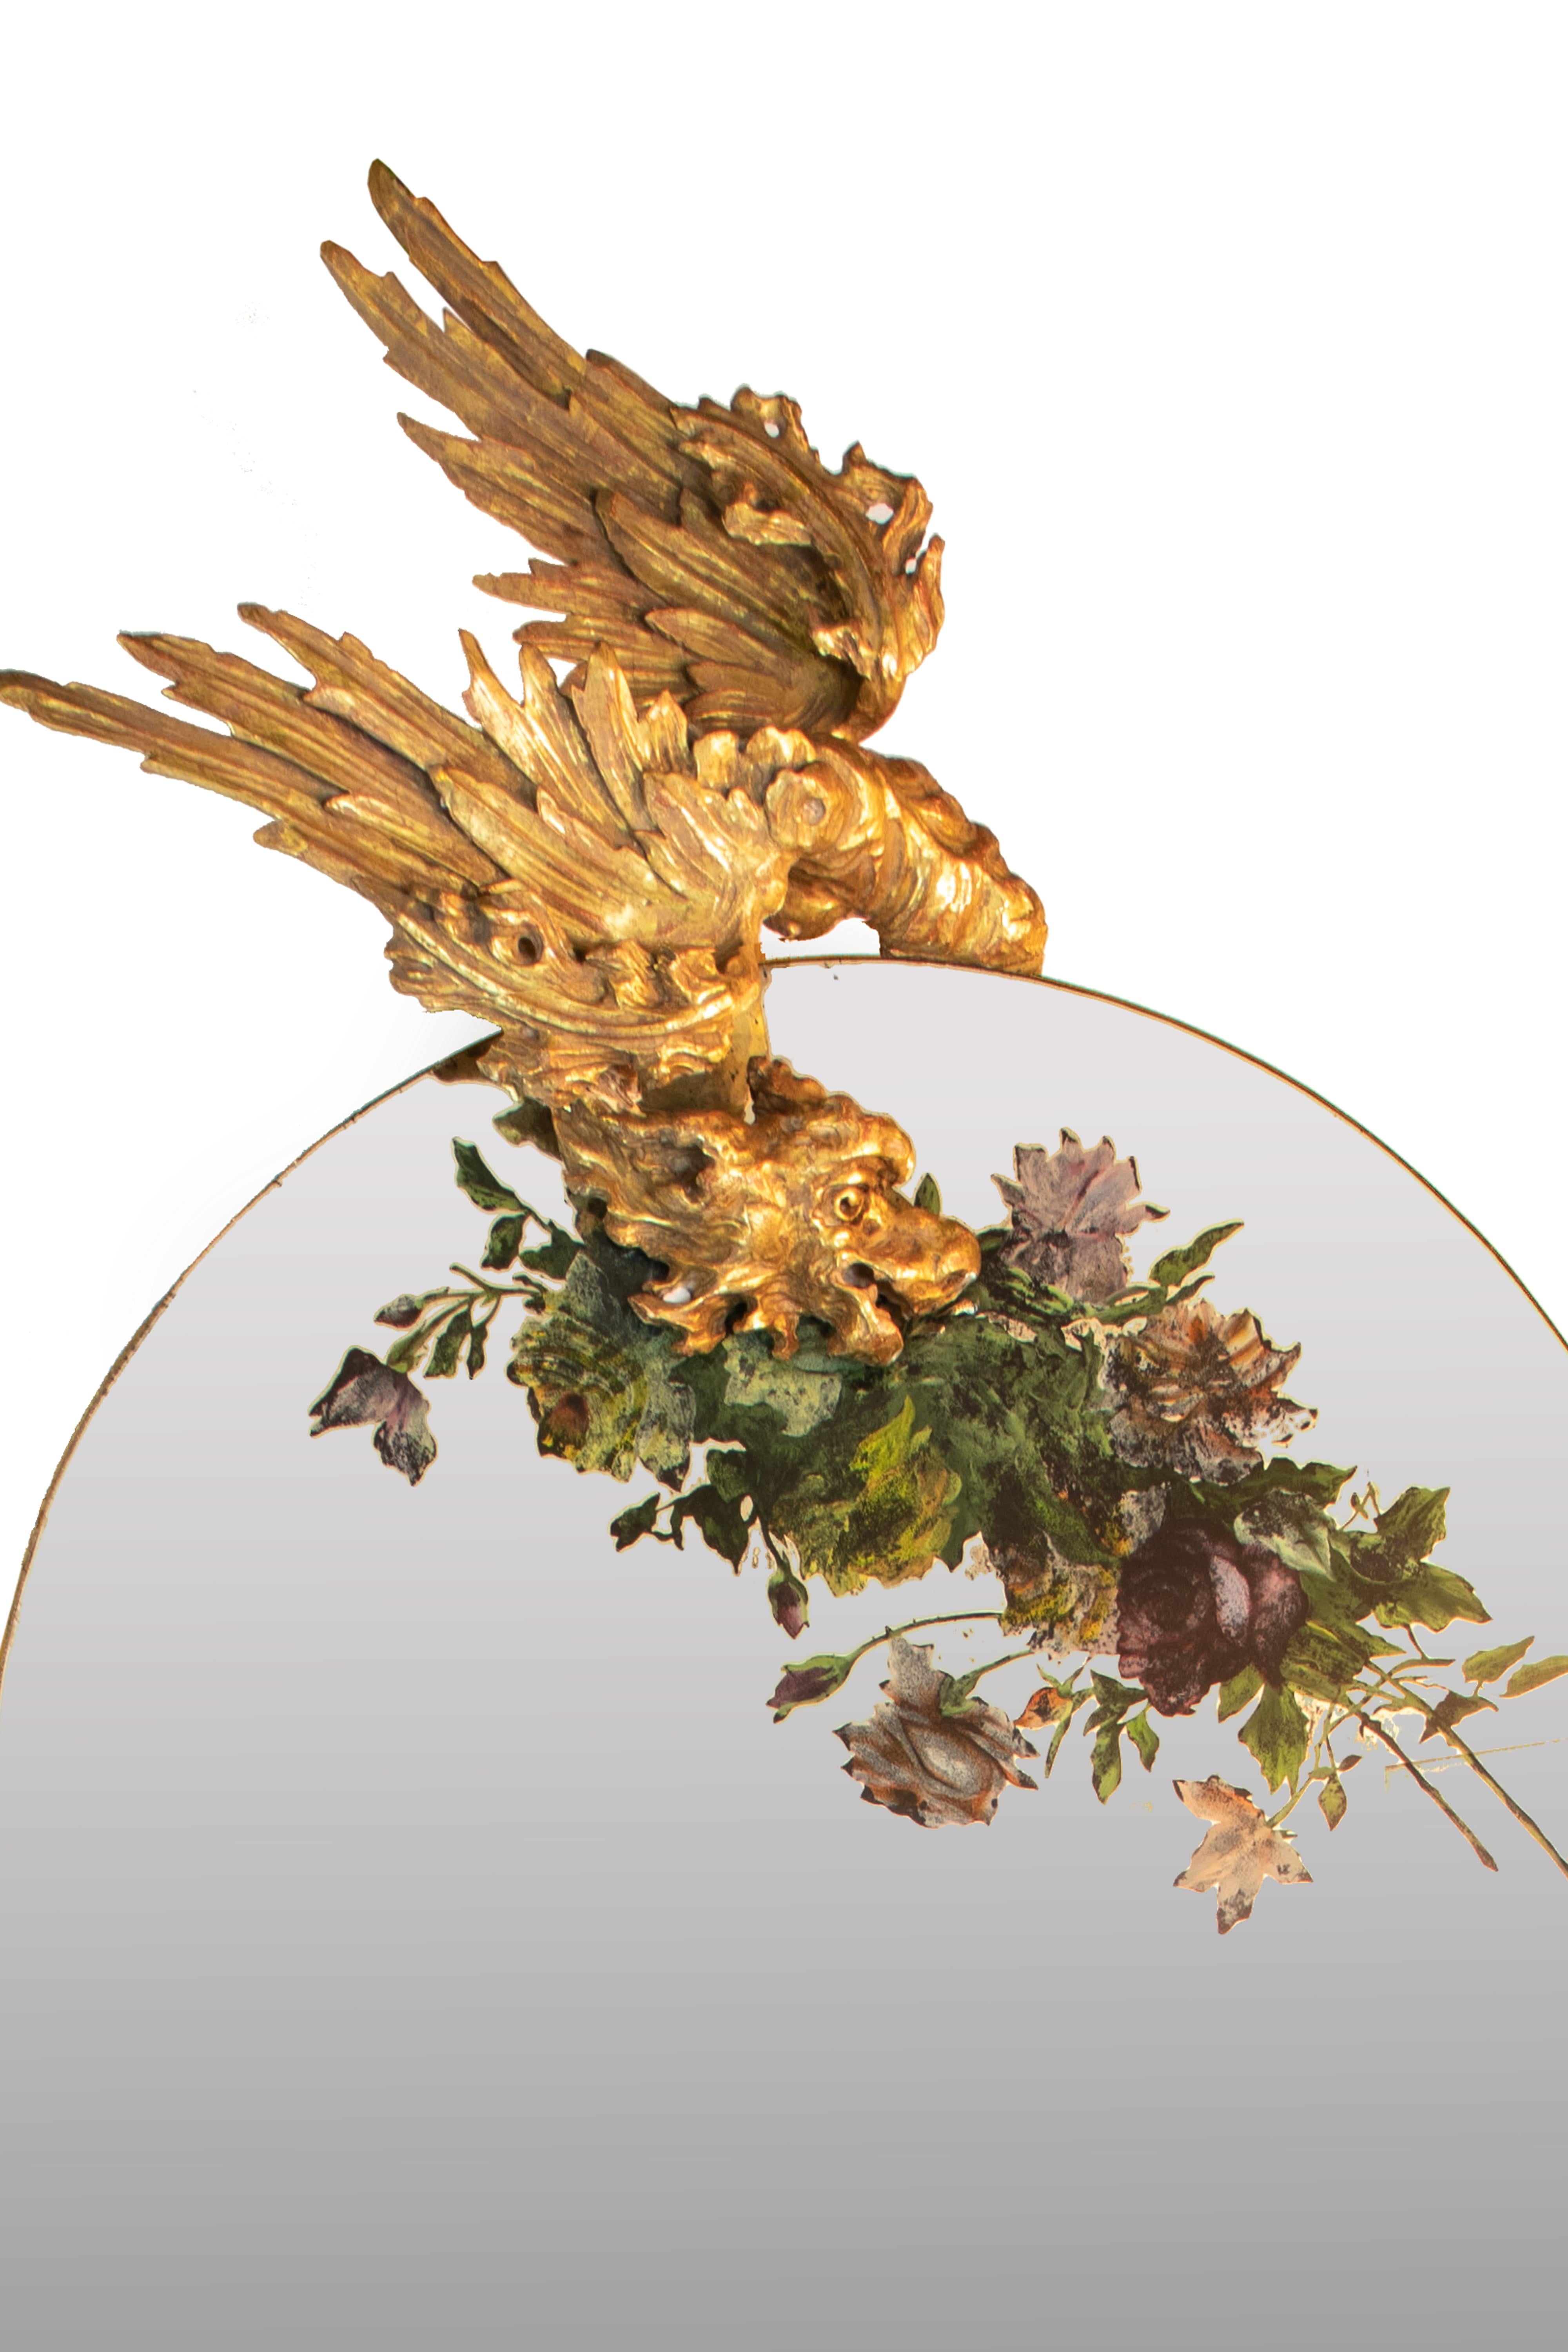 Jardinière vénitienne de la fin du XIXe siècle en bois sculpté et doré, avec un grand miroir en forme d'arche présentant une composition florale en Verre églomisé (peint à l'envers) sur le dessus. Le cadre est décoré de grues, de fleurs et d'un